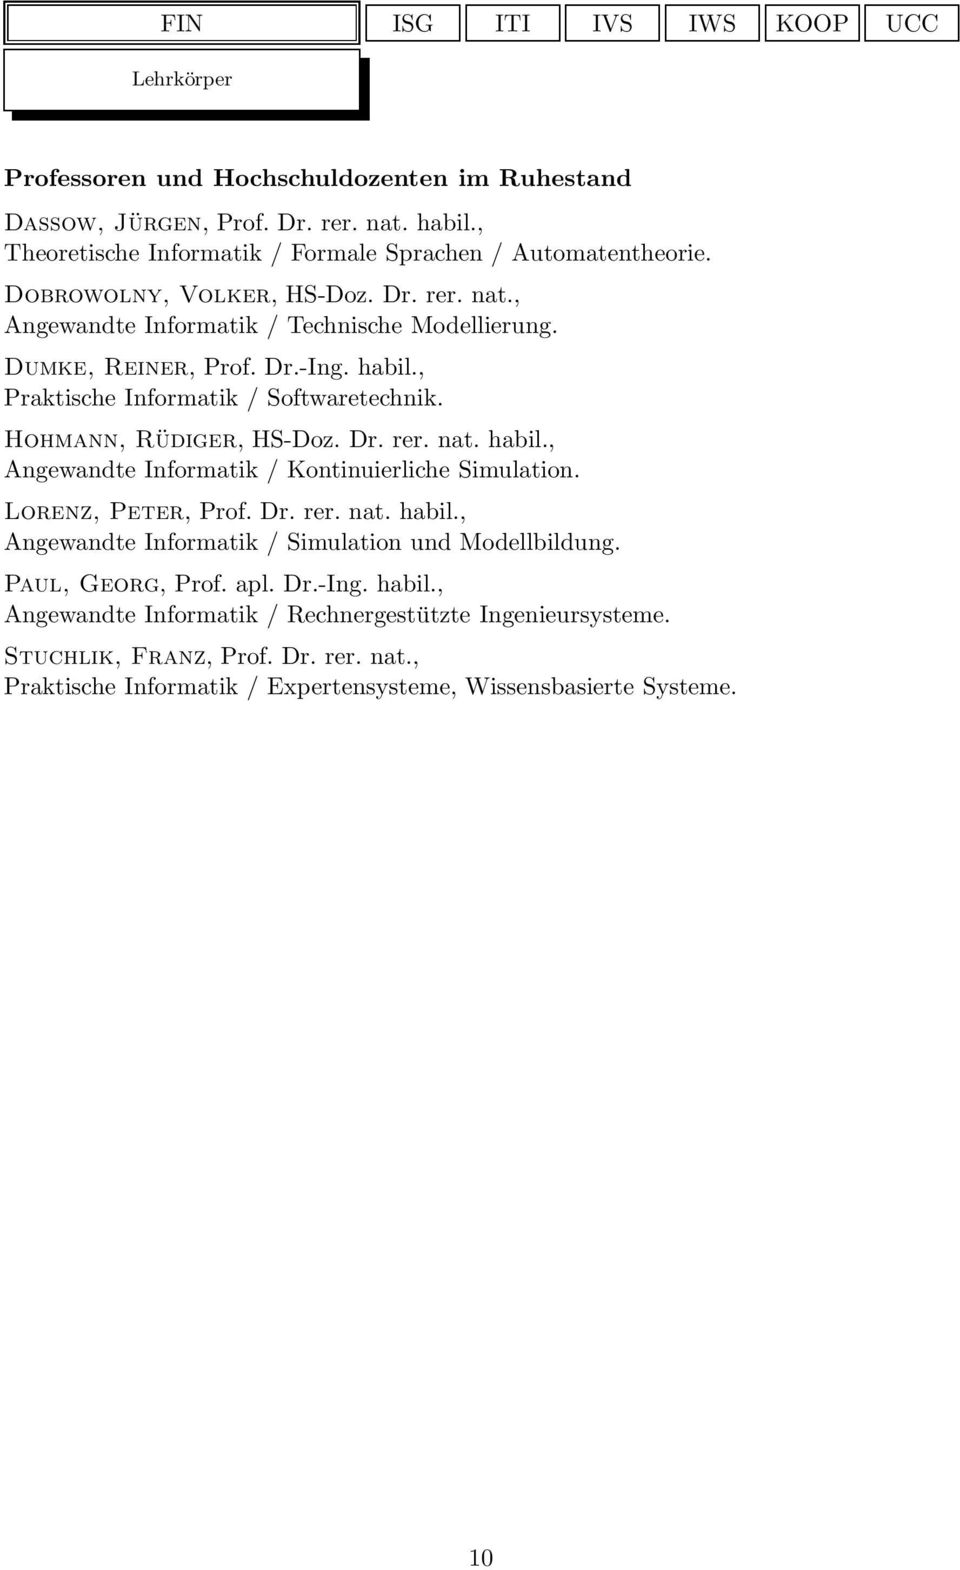 Hohmann, Rüdiger, HS-Doz. Dr. rer. nat. habil., Angewandte Informatik / Kontinuierliche Simulation. Lorenz, Peter, Prof. Dr. rer. nat. habil., Angewandte Informatik / Simulation und Modellbildung.